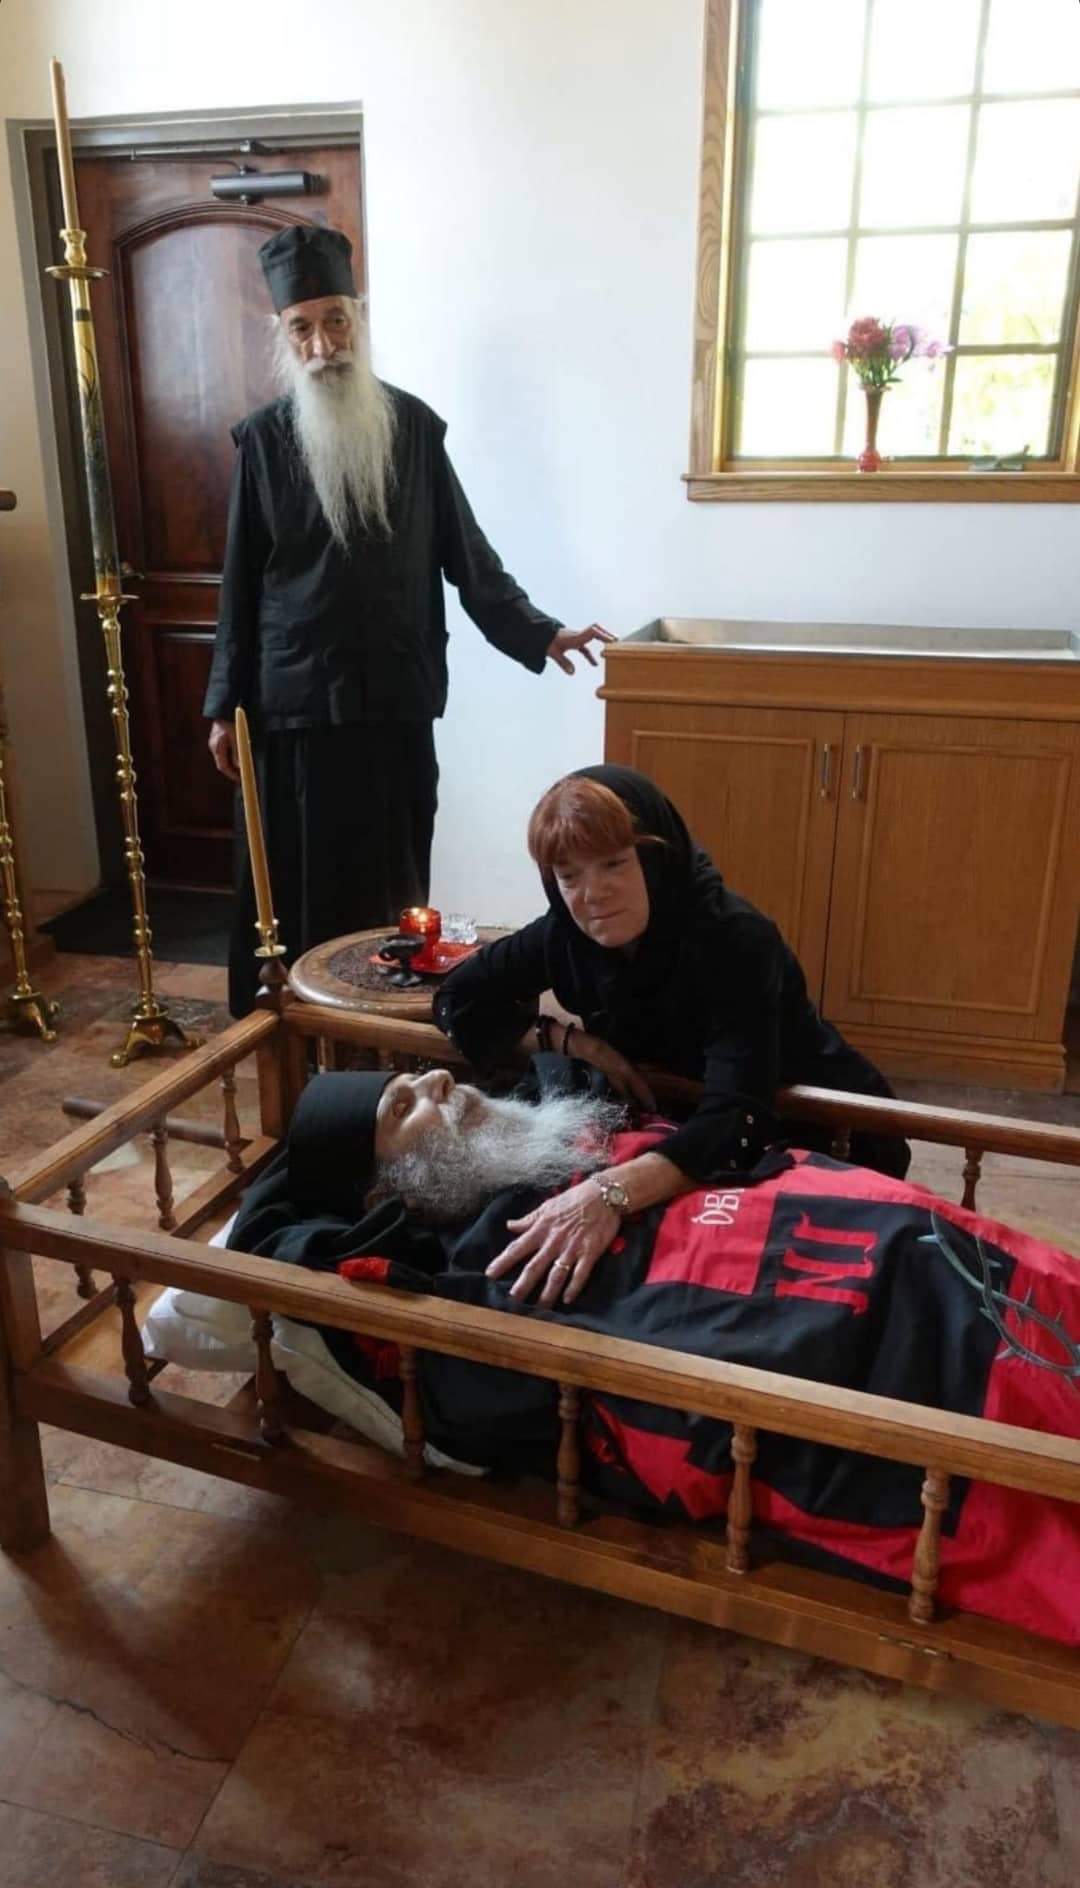 Το σκήνωμα του μοναχού Εφραίμ (Φρανκ Άτγουντ) και η σύζυγος του Ρέιτσελ Άτγουντ. 